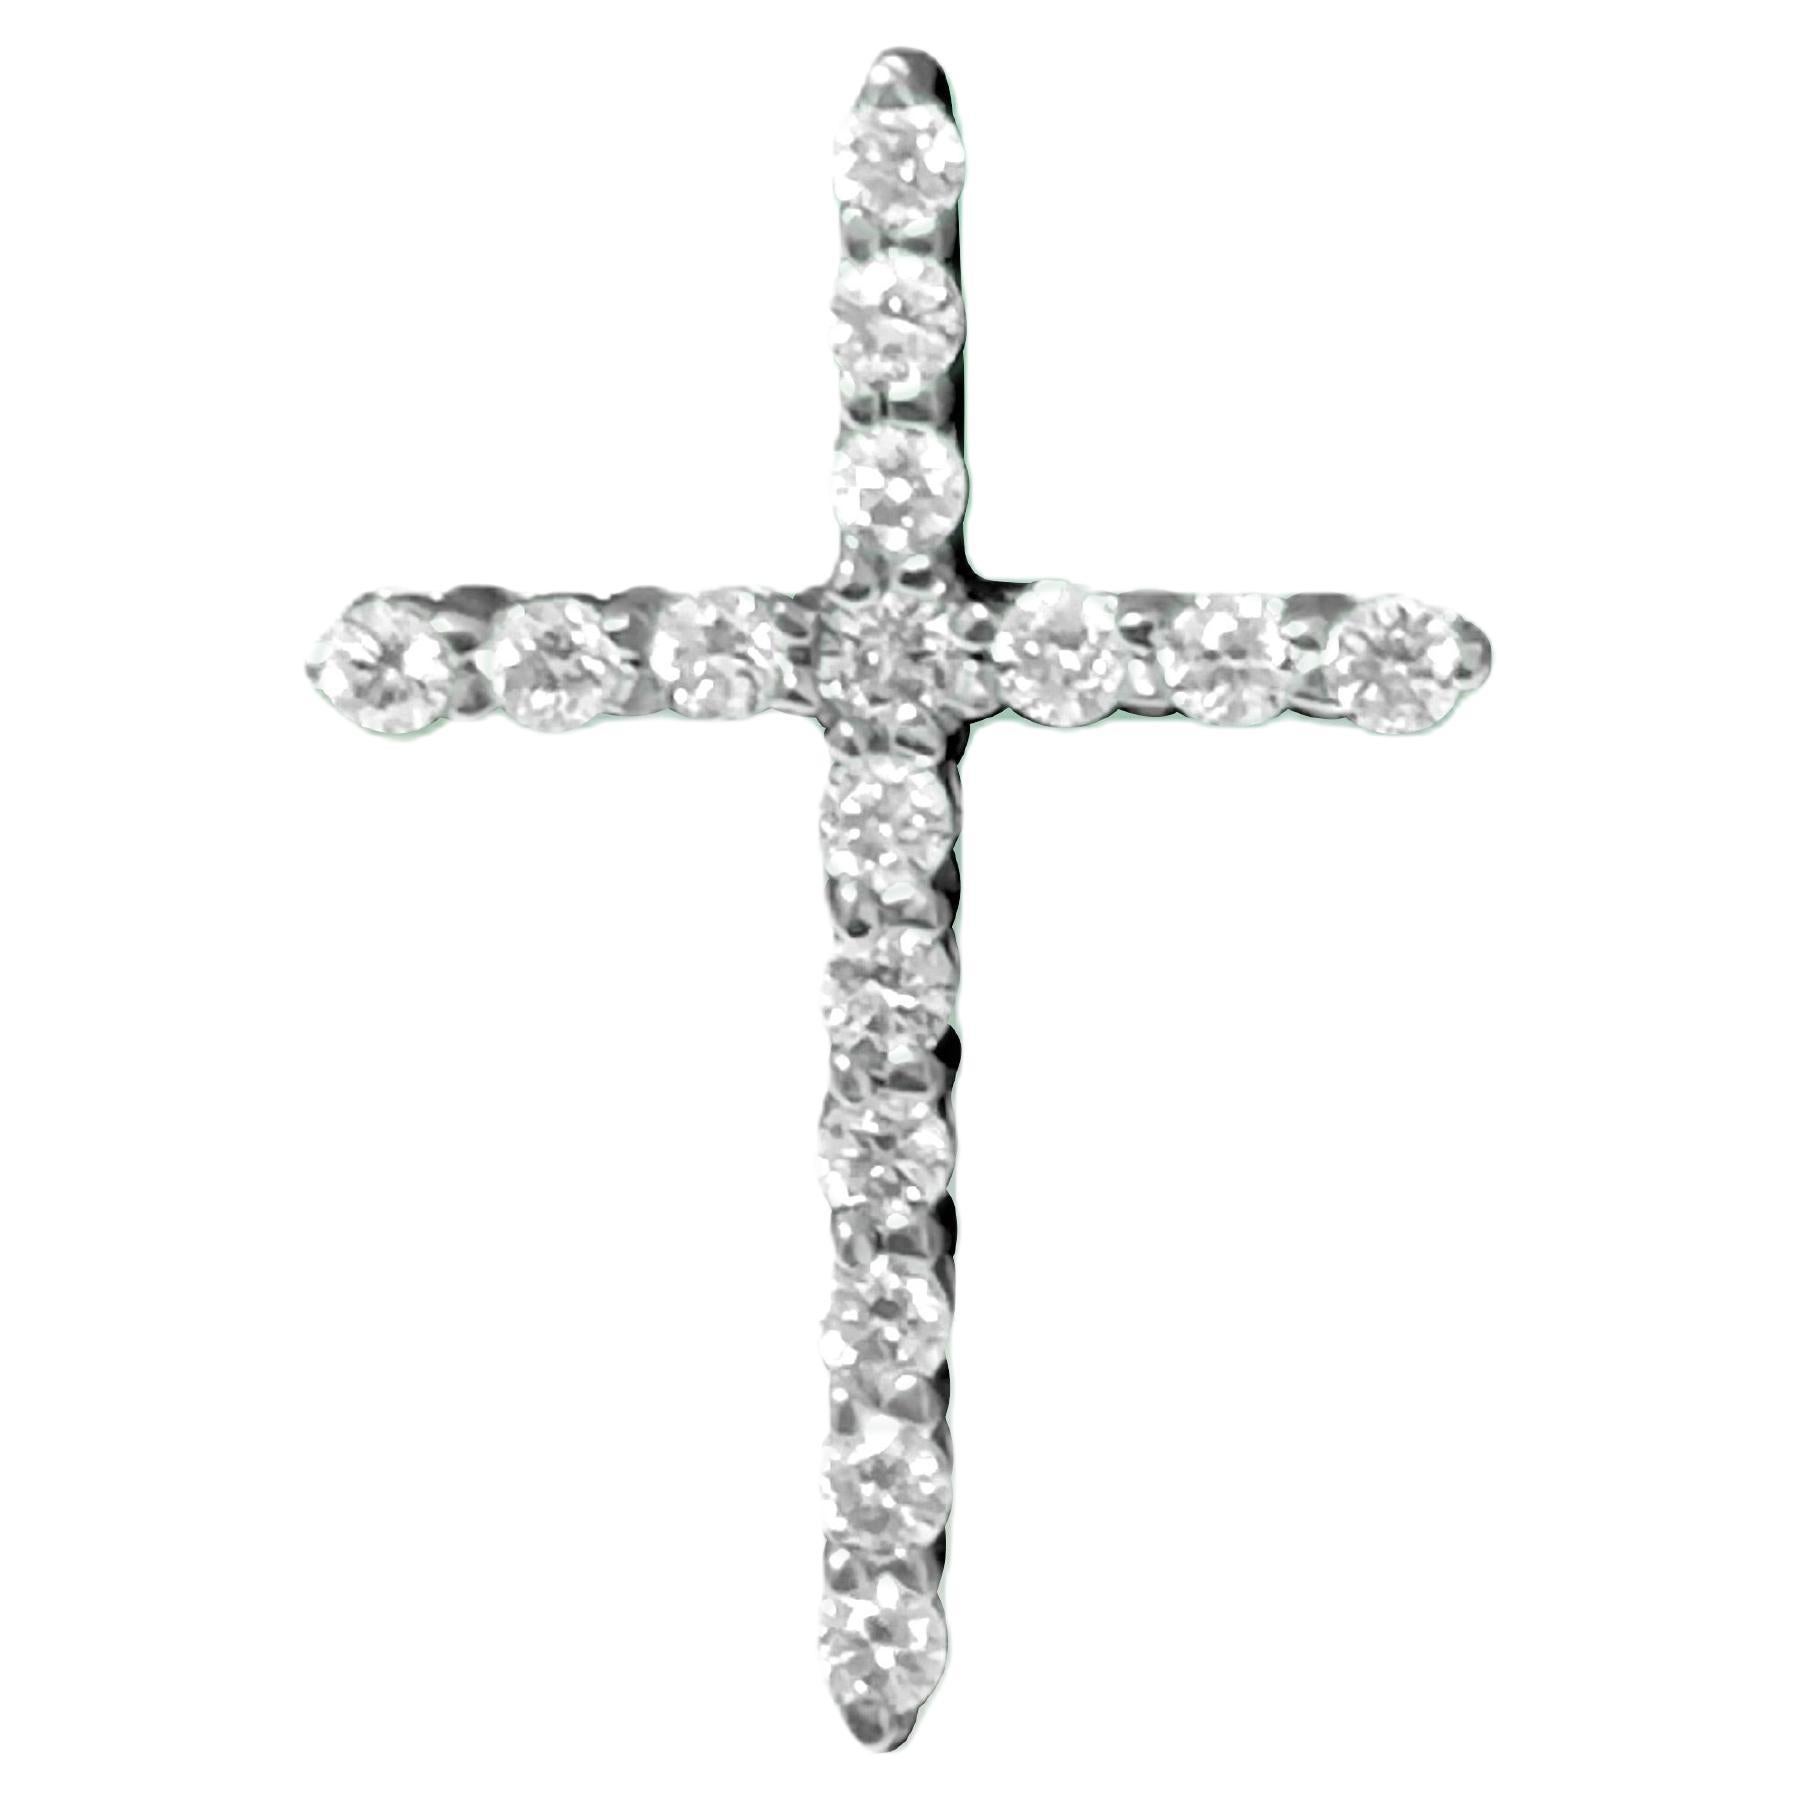 Unisex, 14K White Gold & Diamond Cross. Religious Cross